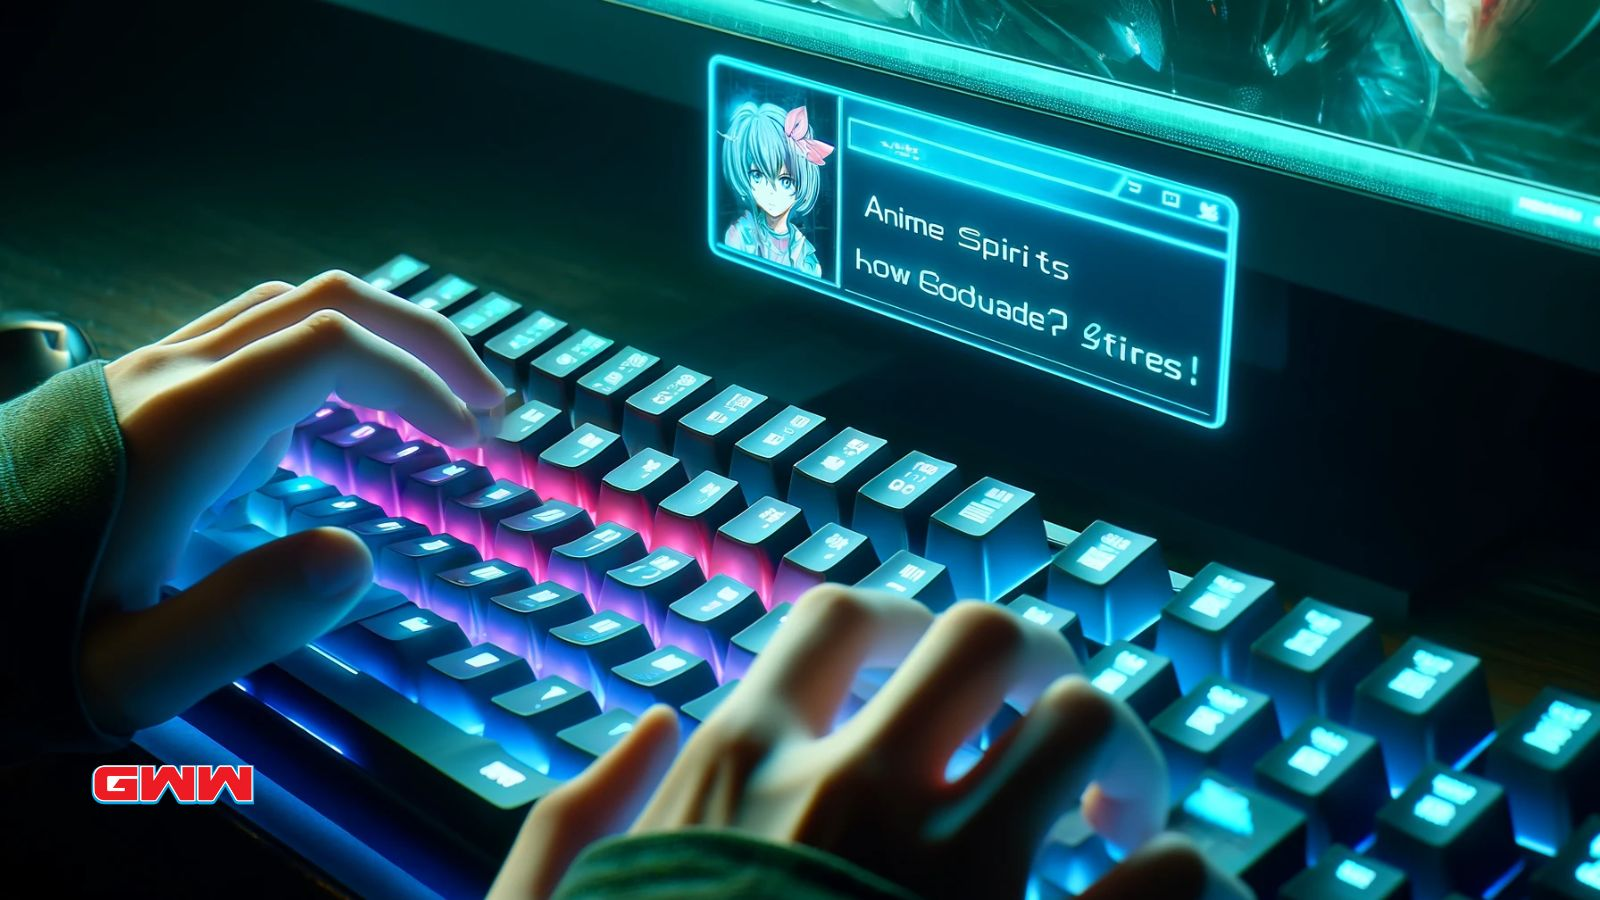 Manos tecleando en un teclado futurista, ingresando códigos de Anime Spirits